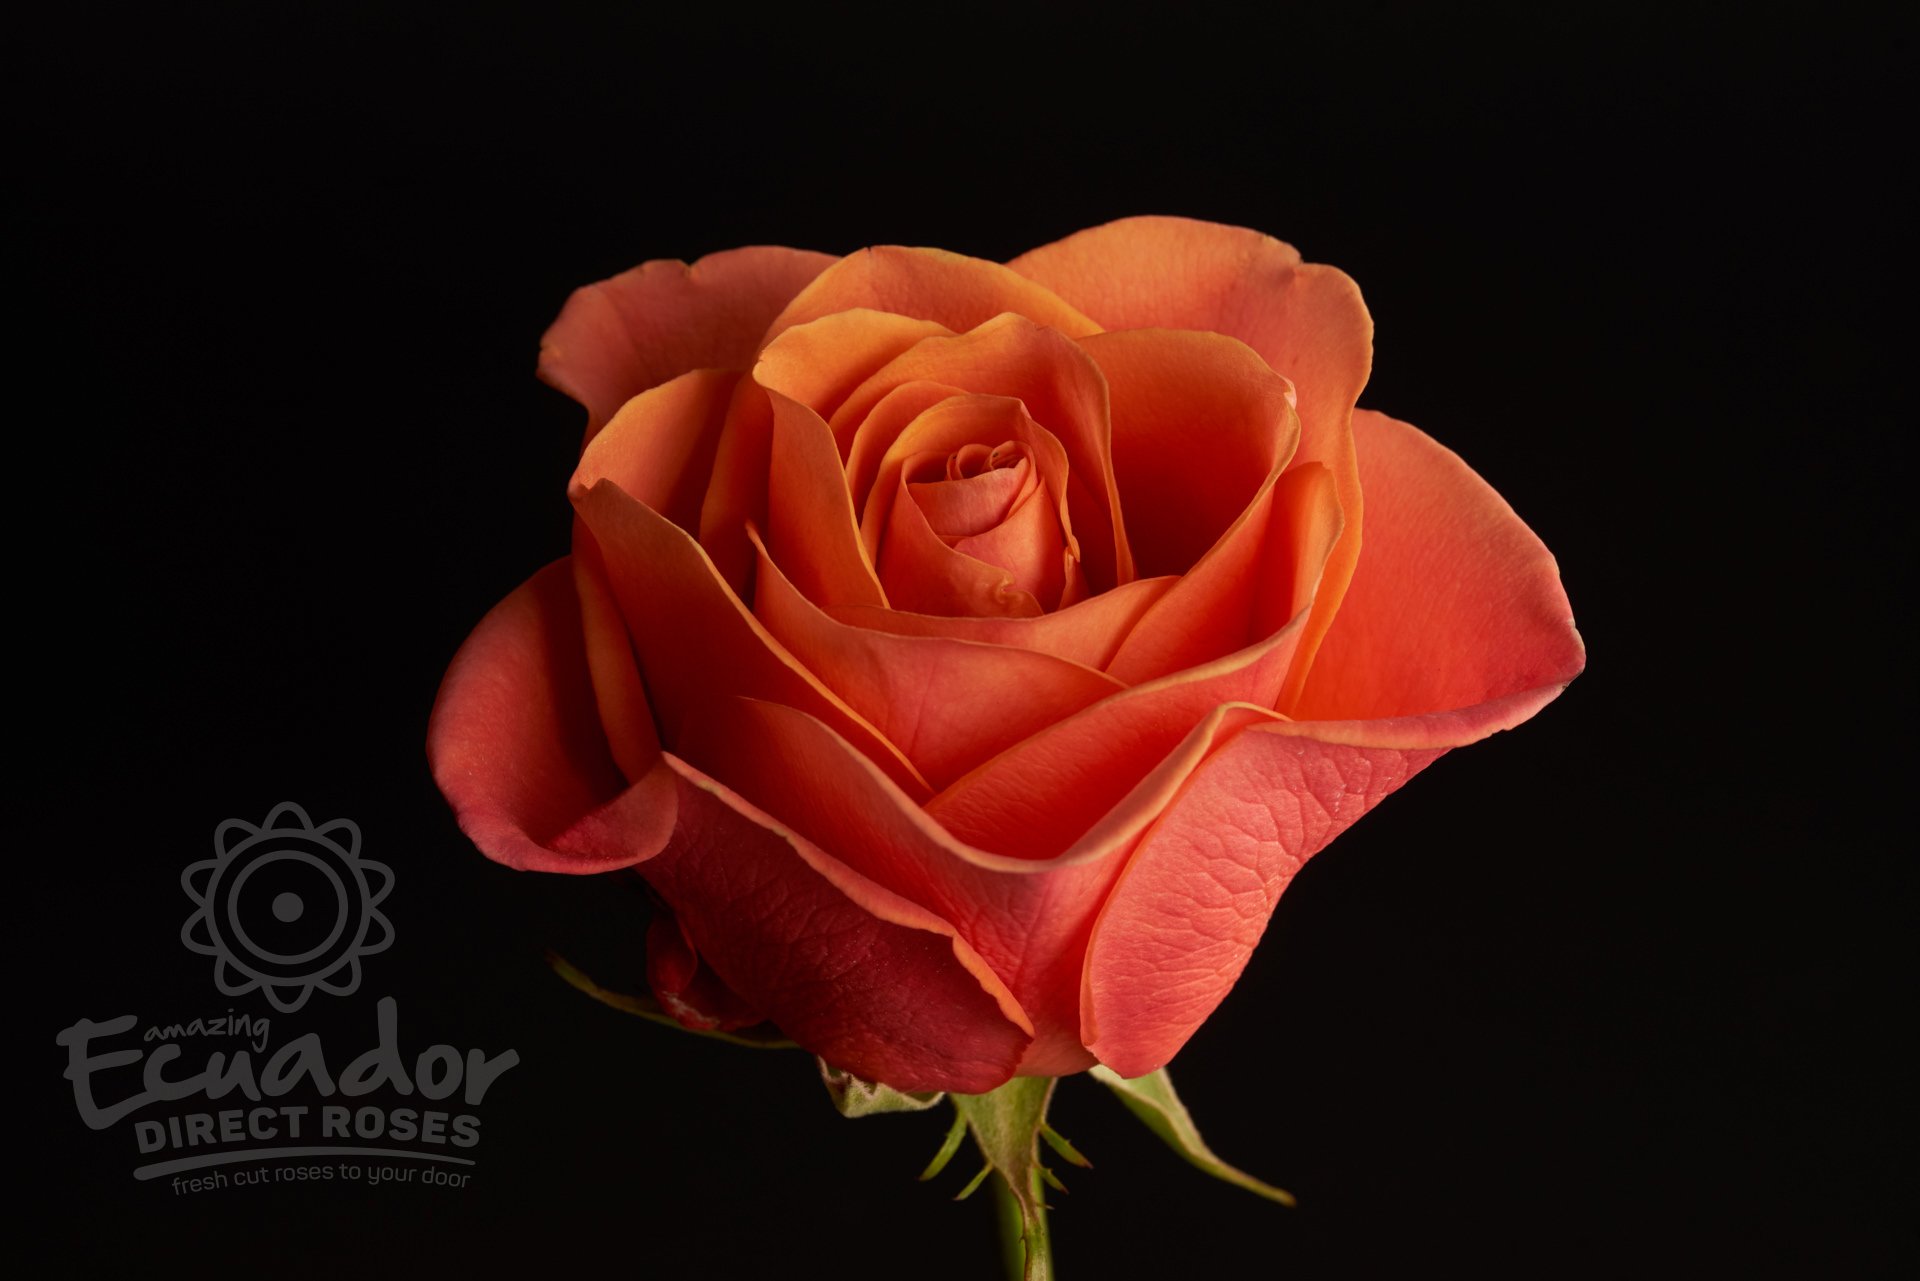 ORANGE CRUSH - Orange Rose | Ecuador Direct Roses